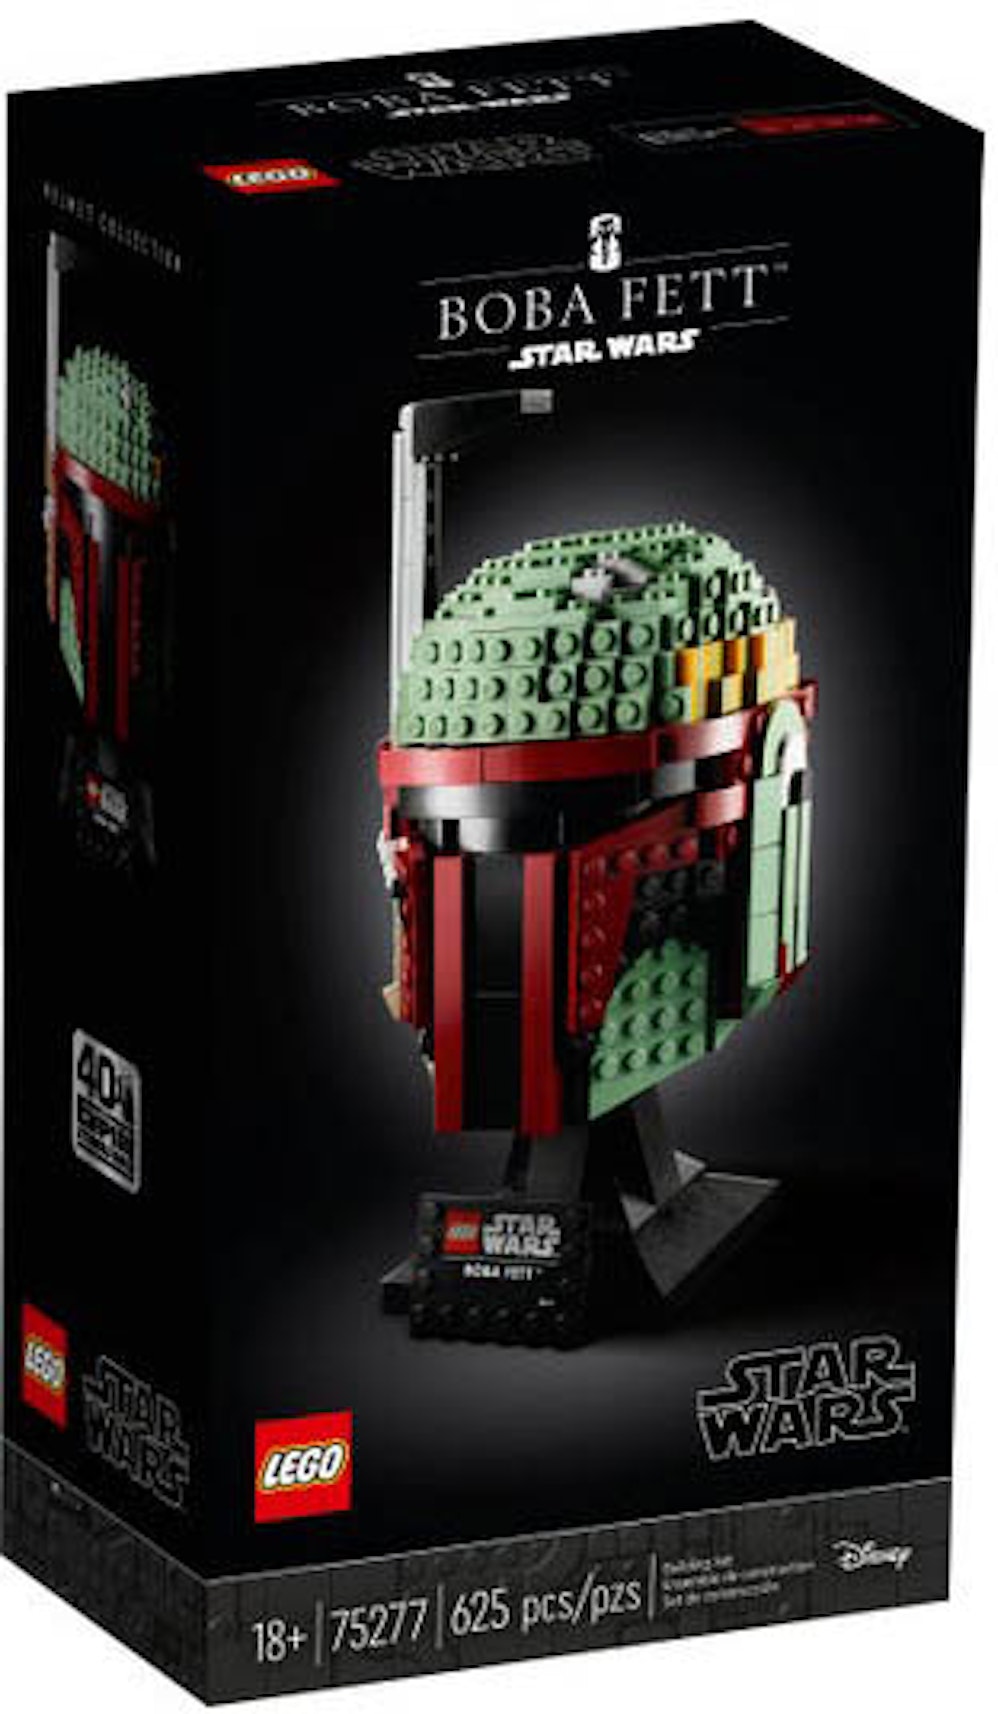 LEGO Star Wars Fett Helmet Set 75277 - US